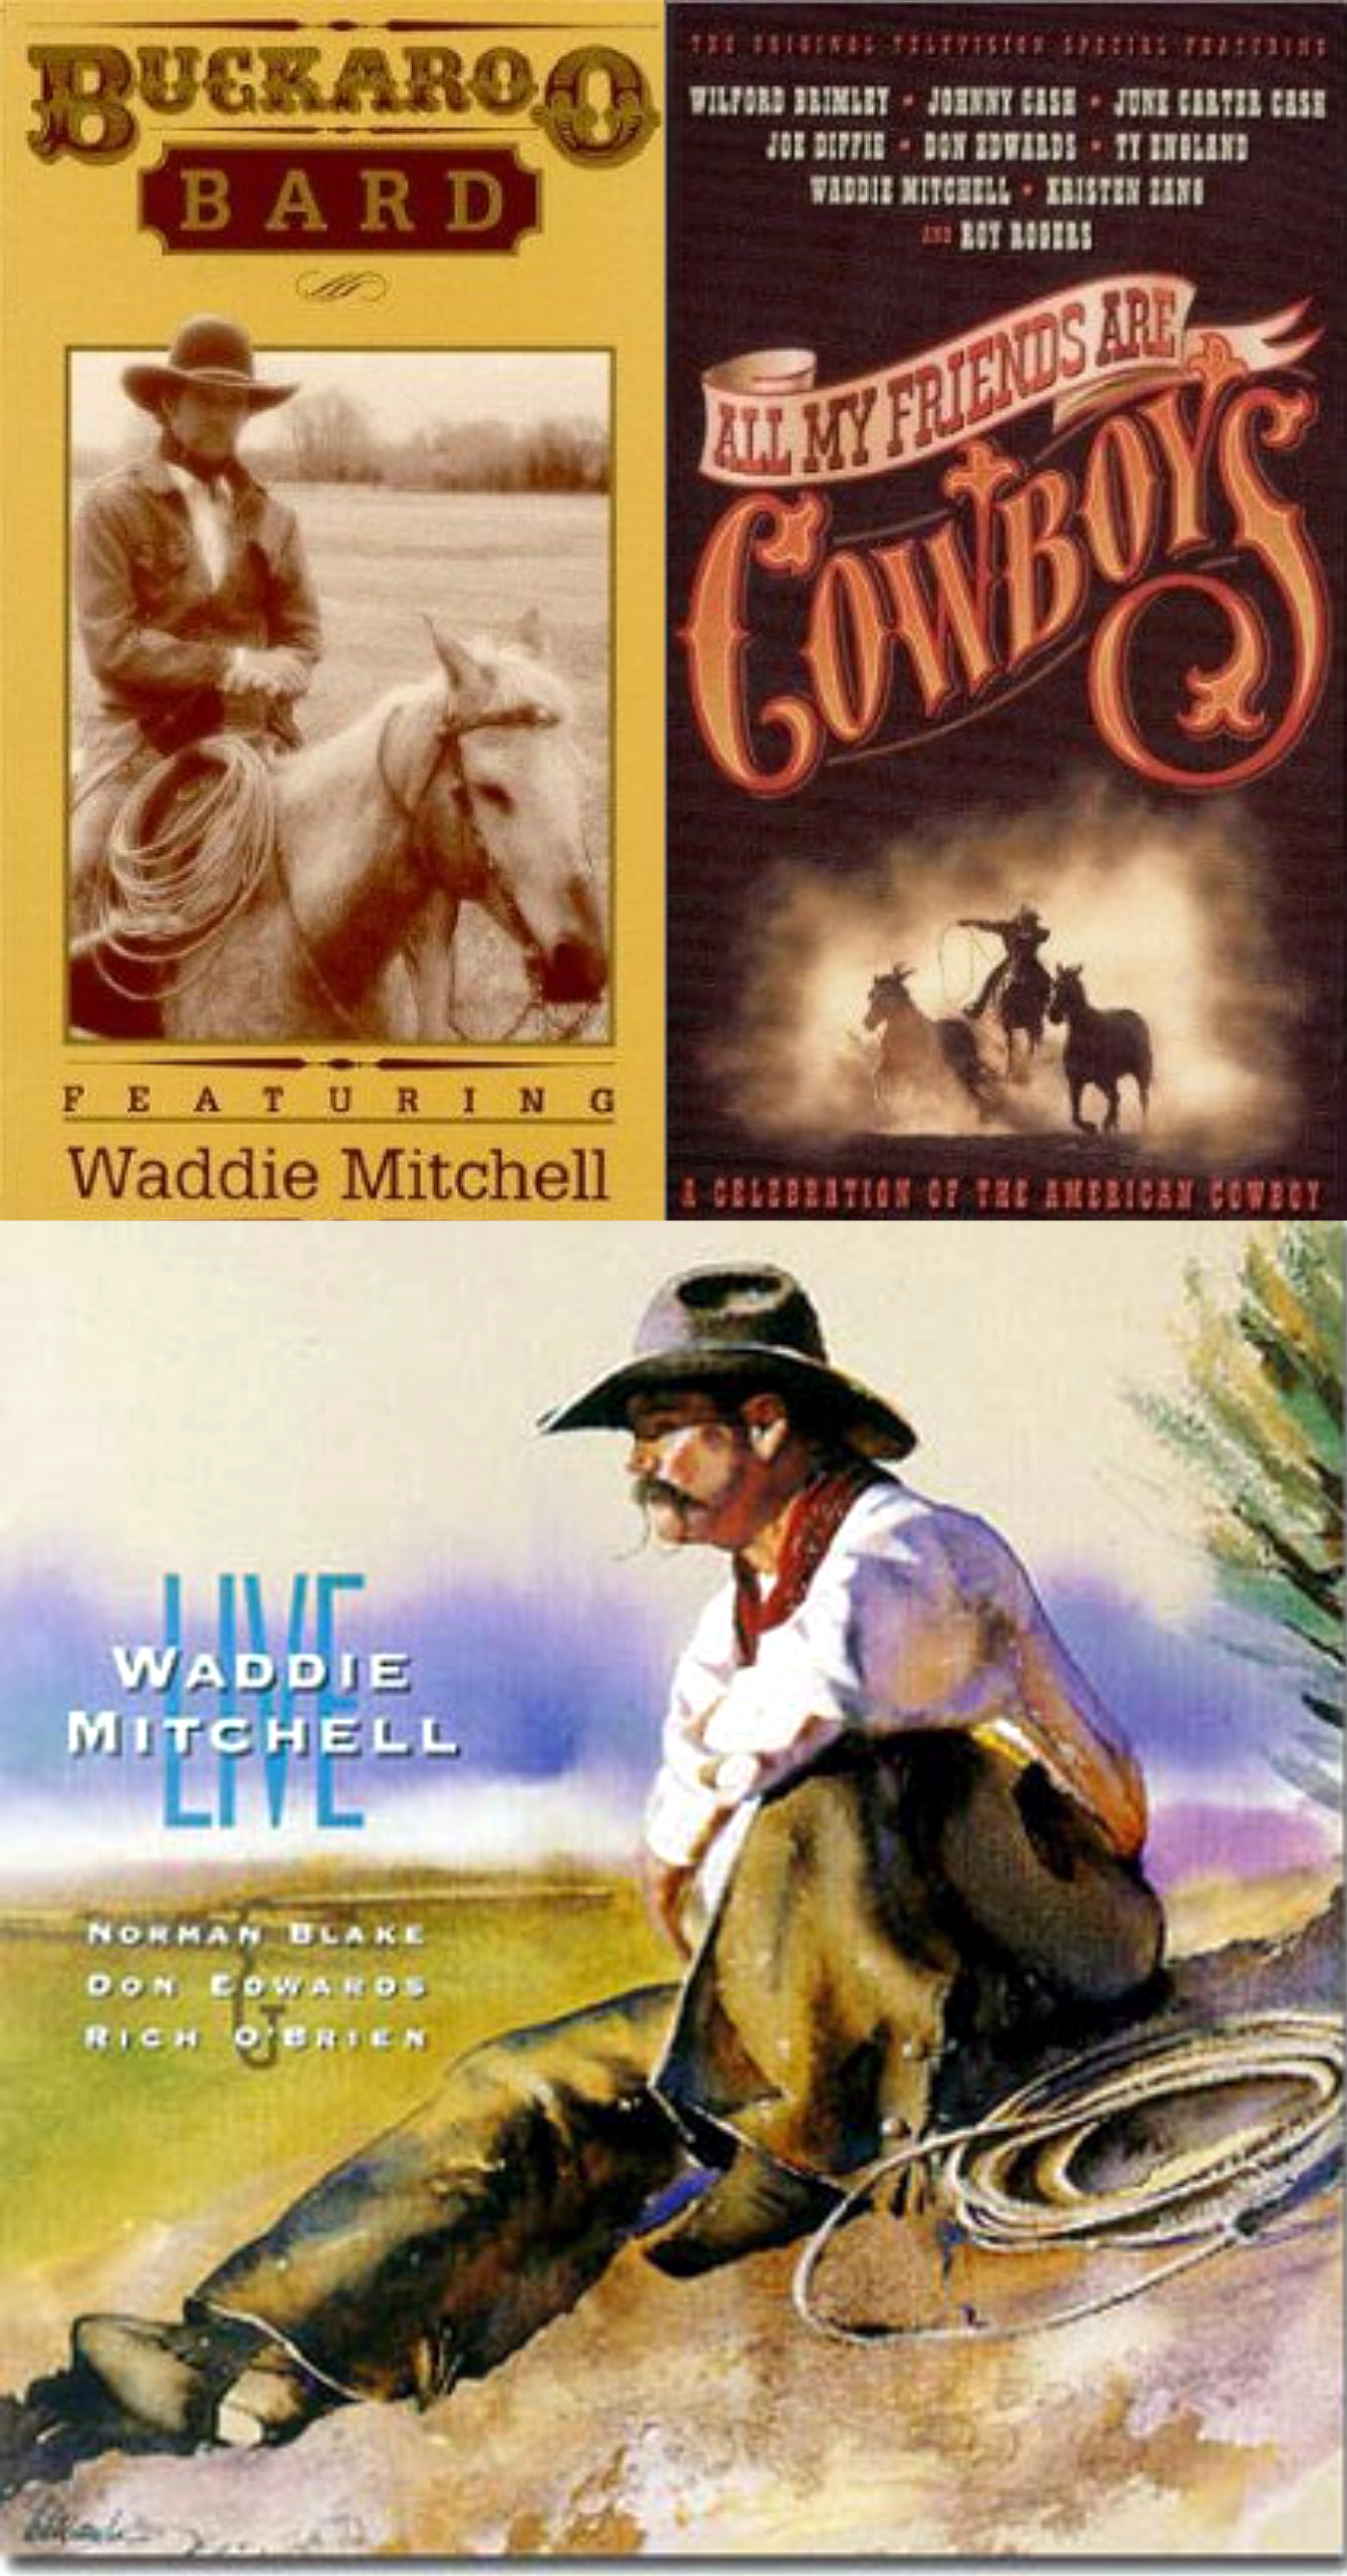 waddie mitchell cowboy poet 2